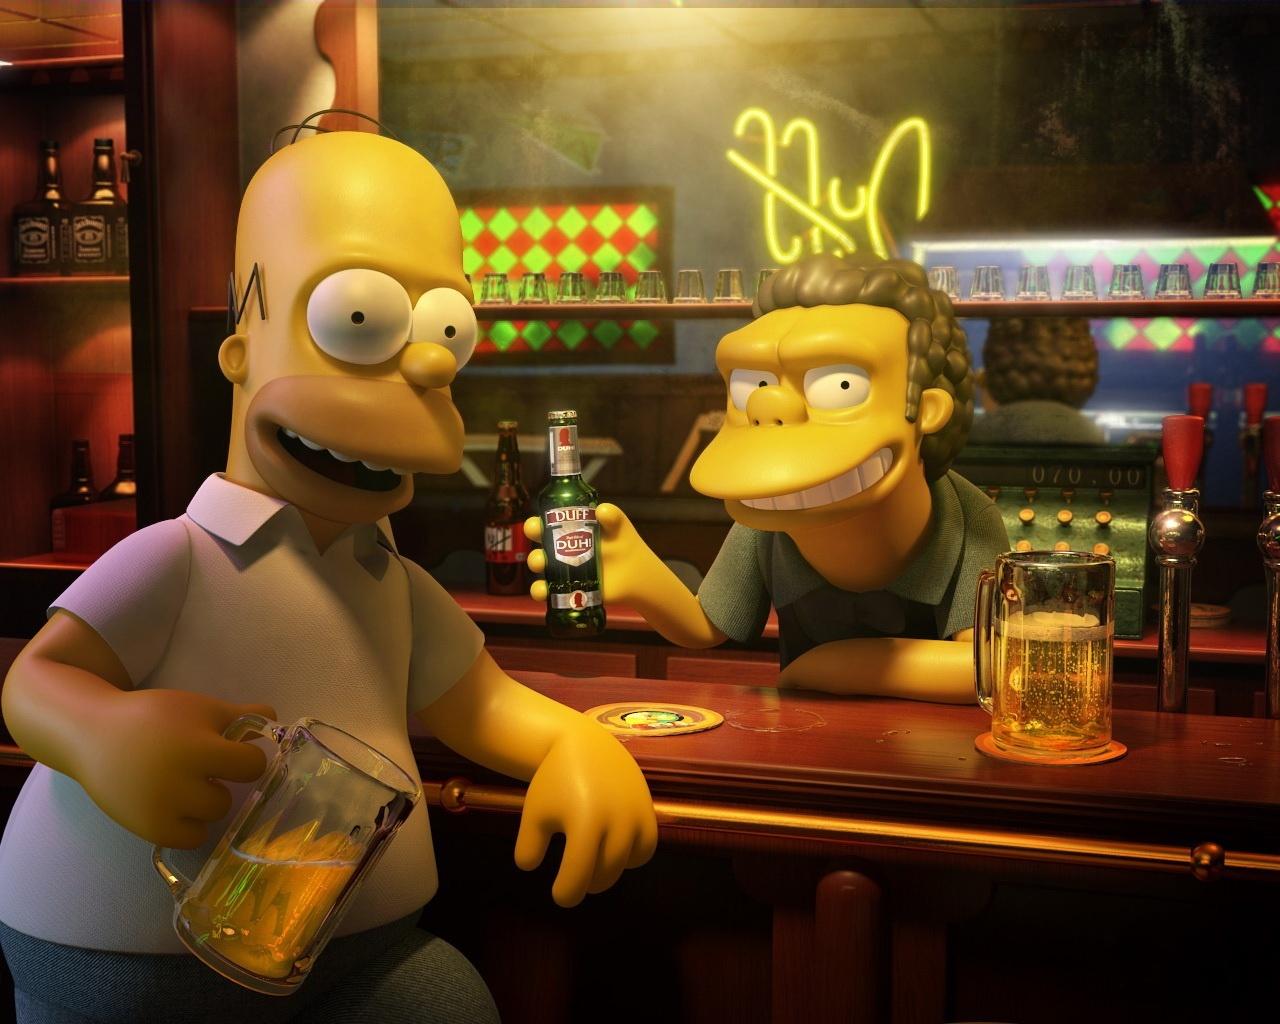 Fondos de Pantalla Simpsons Animación descargar imagenes